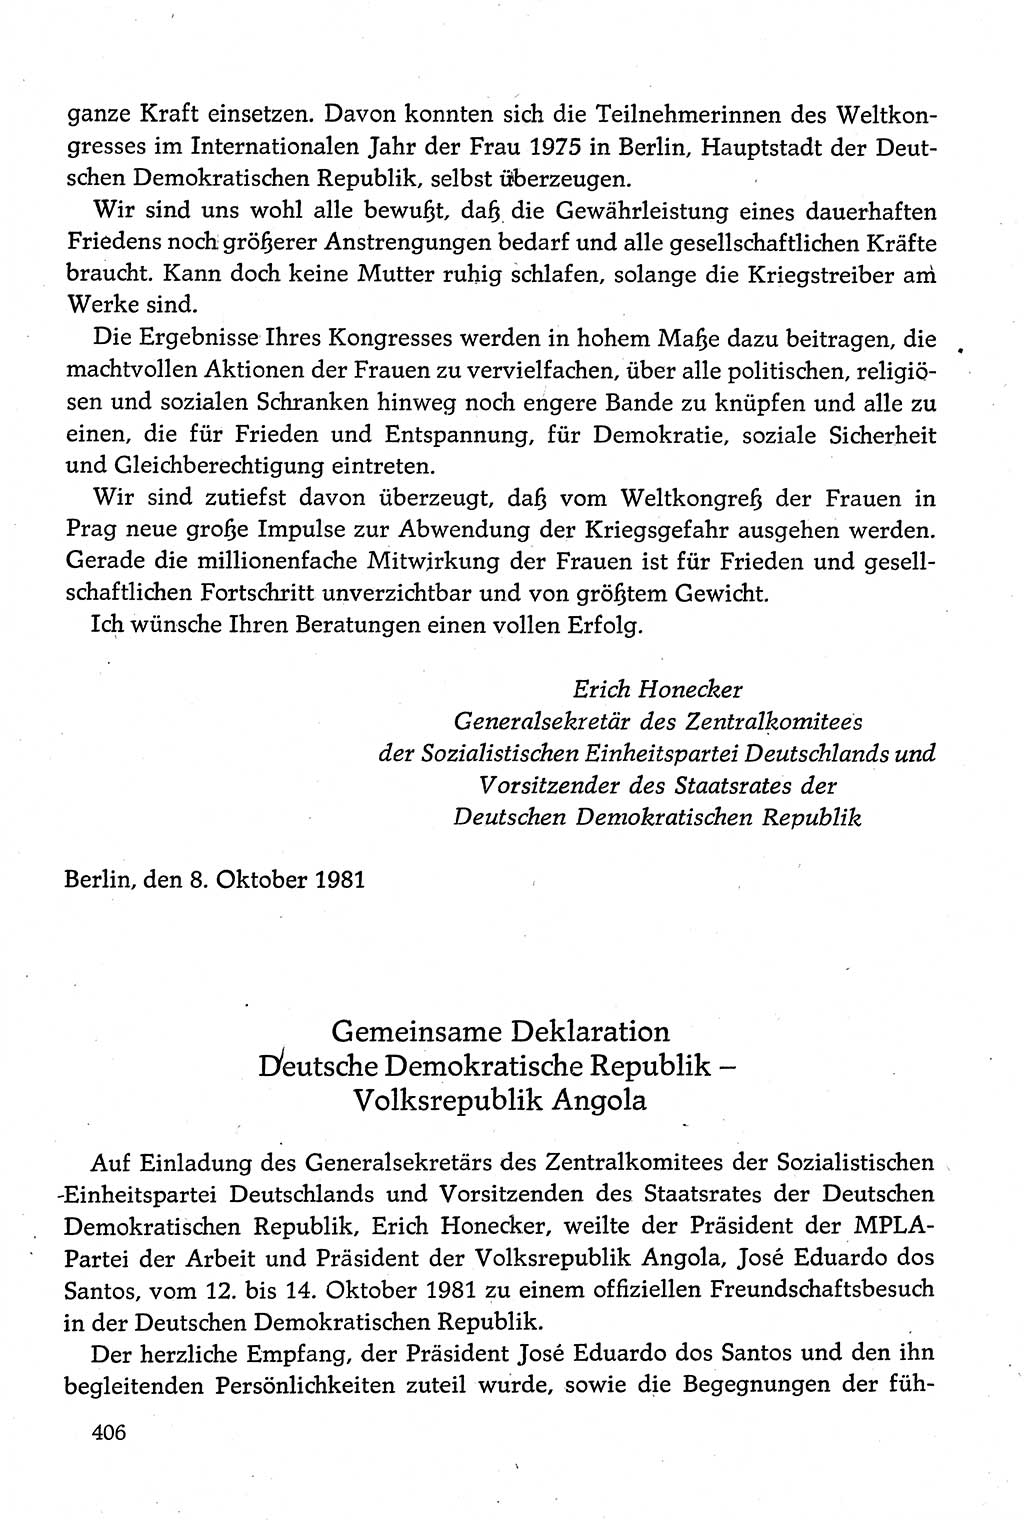 Dokumente der Sozialistischen Einheitspartei Deutschlands (SED) [Deutsche Demokratische Republik (DDR)] 1980-1981, Seite 406 (Dok. SED DDR 1980-1981, S. 406)